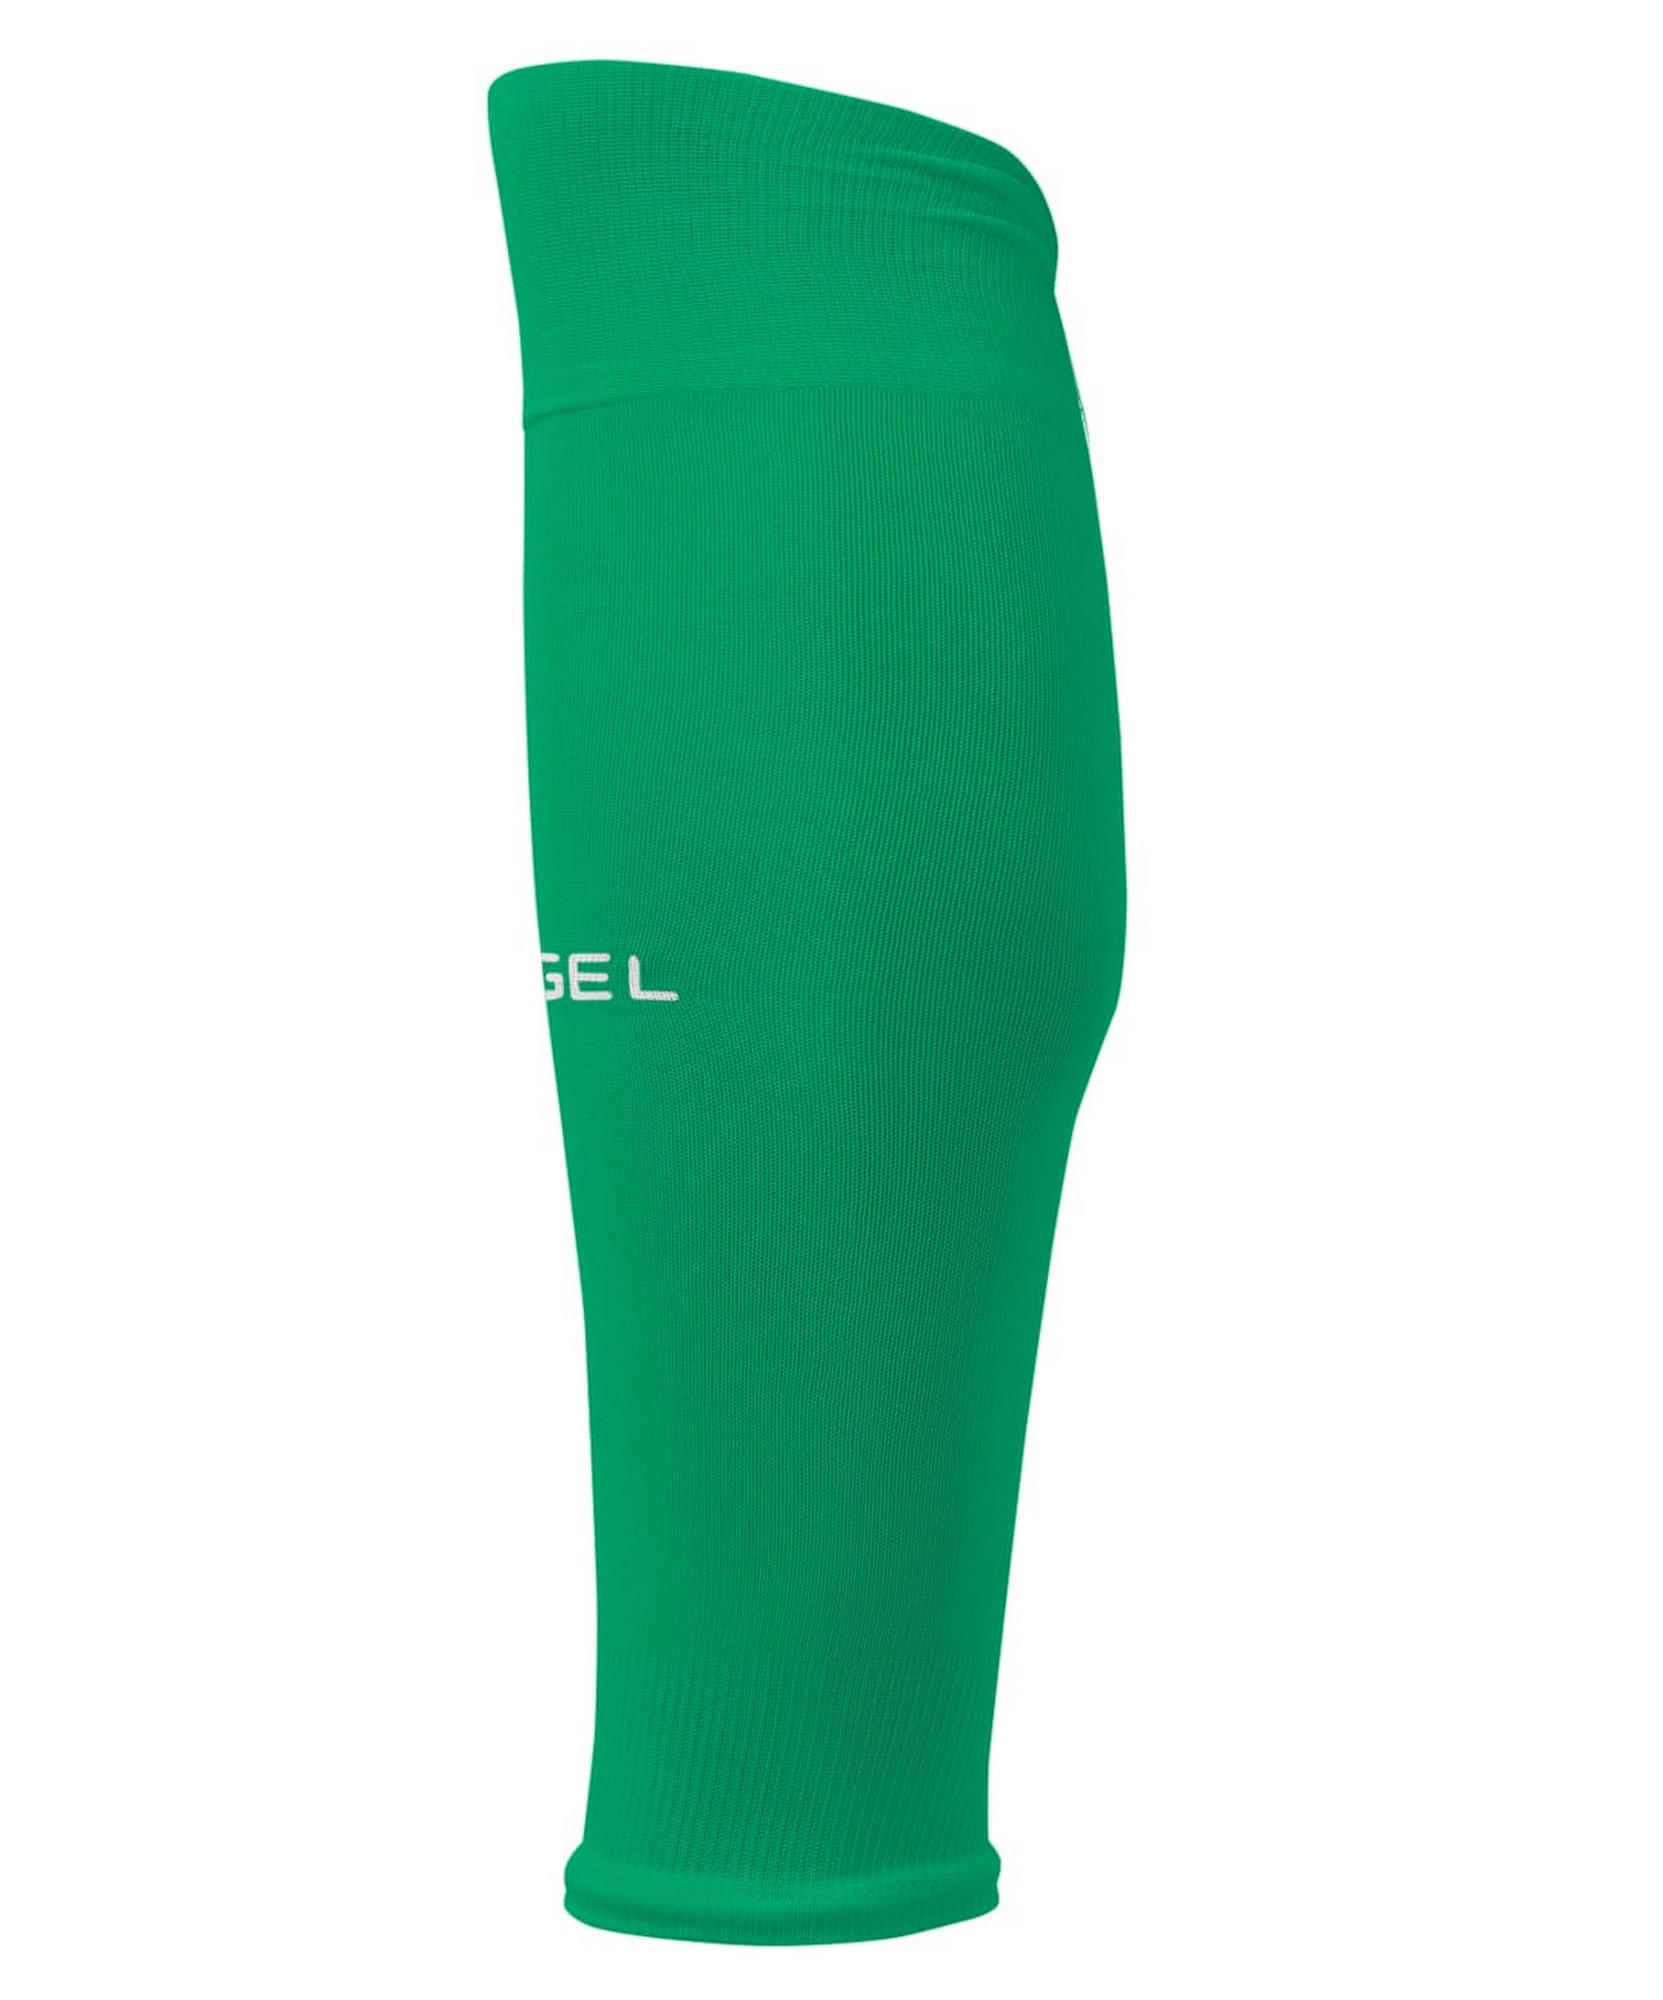 Купить Гольфы футбольные Jögel Camp Basic Sleeve Socks зеленыйбелый,